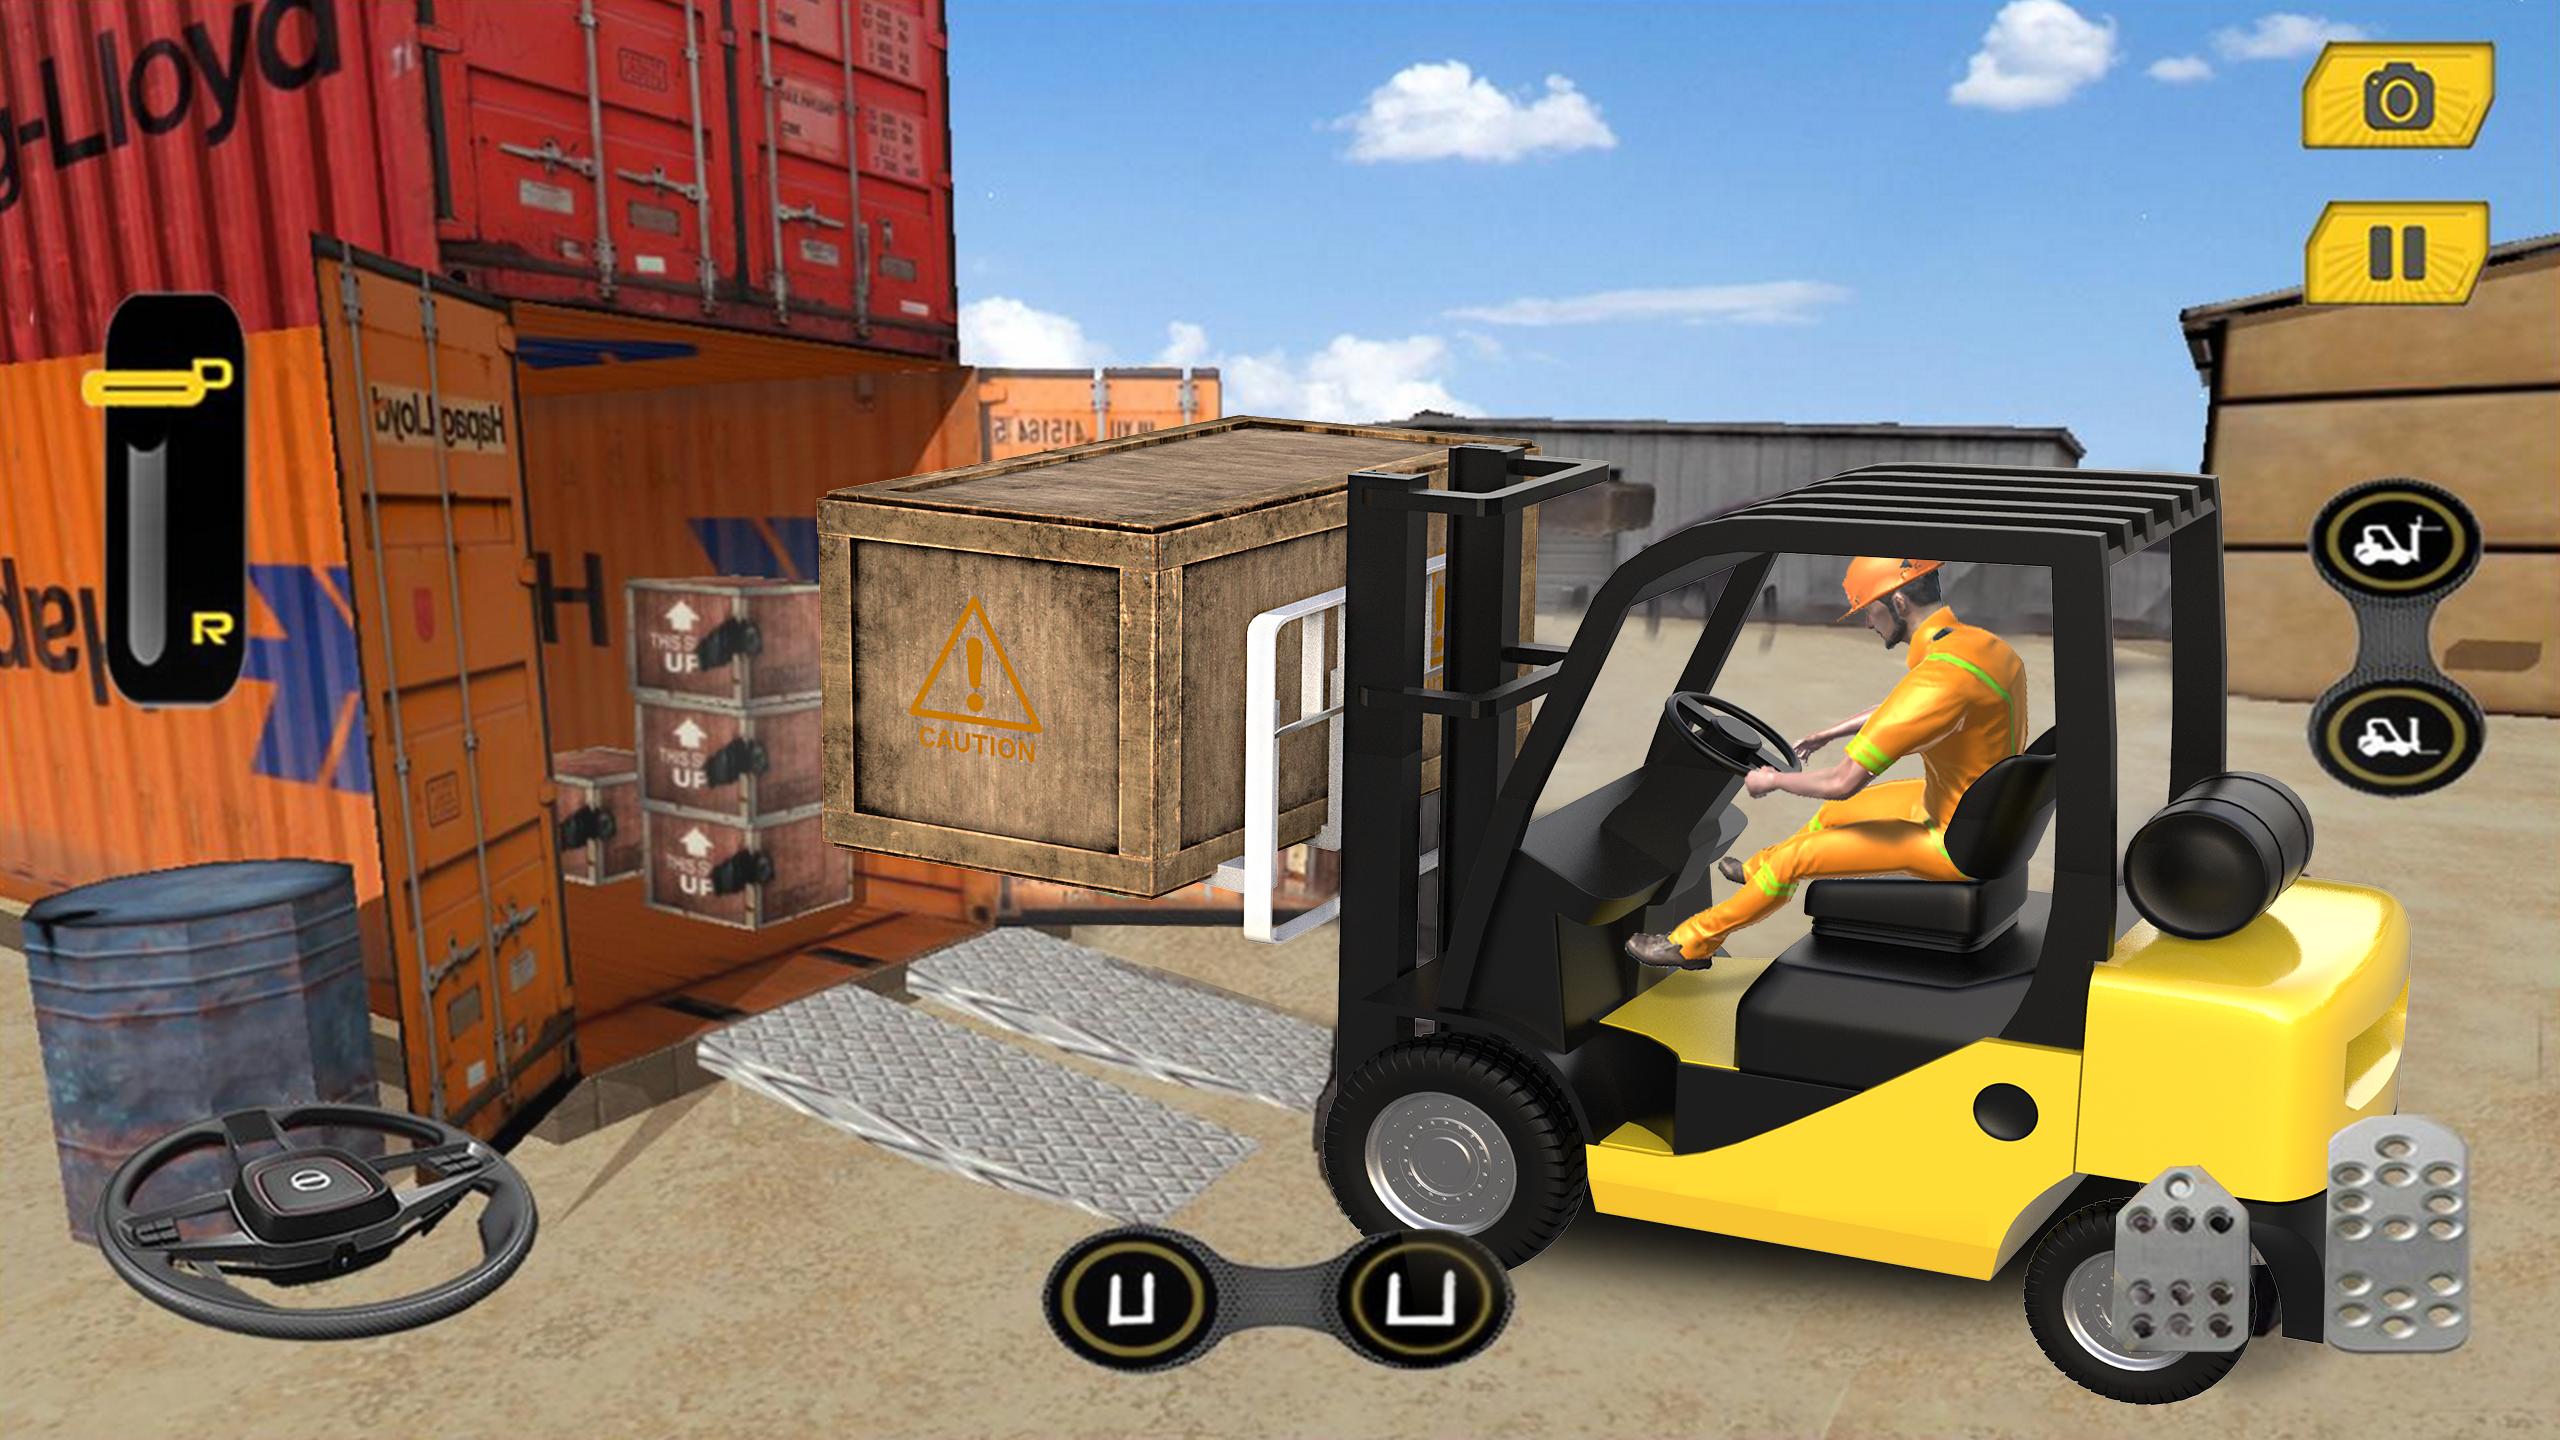 Real Forklift Simulator 2019: Cargo Forklift Games 3.1 Screenshot 16